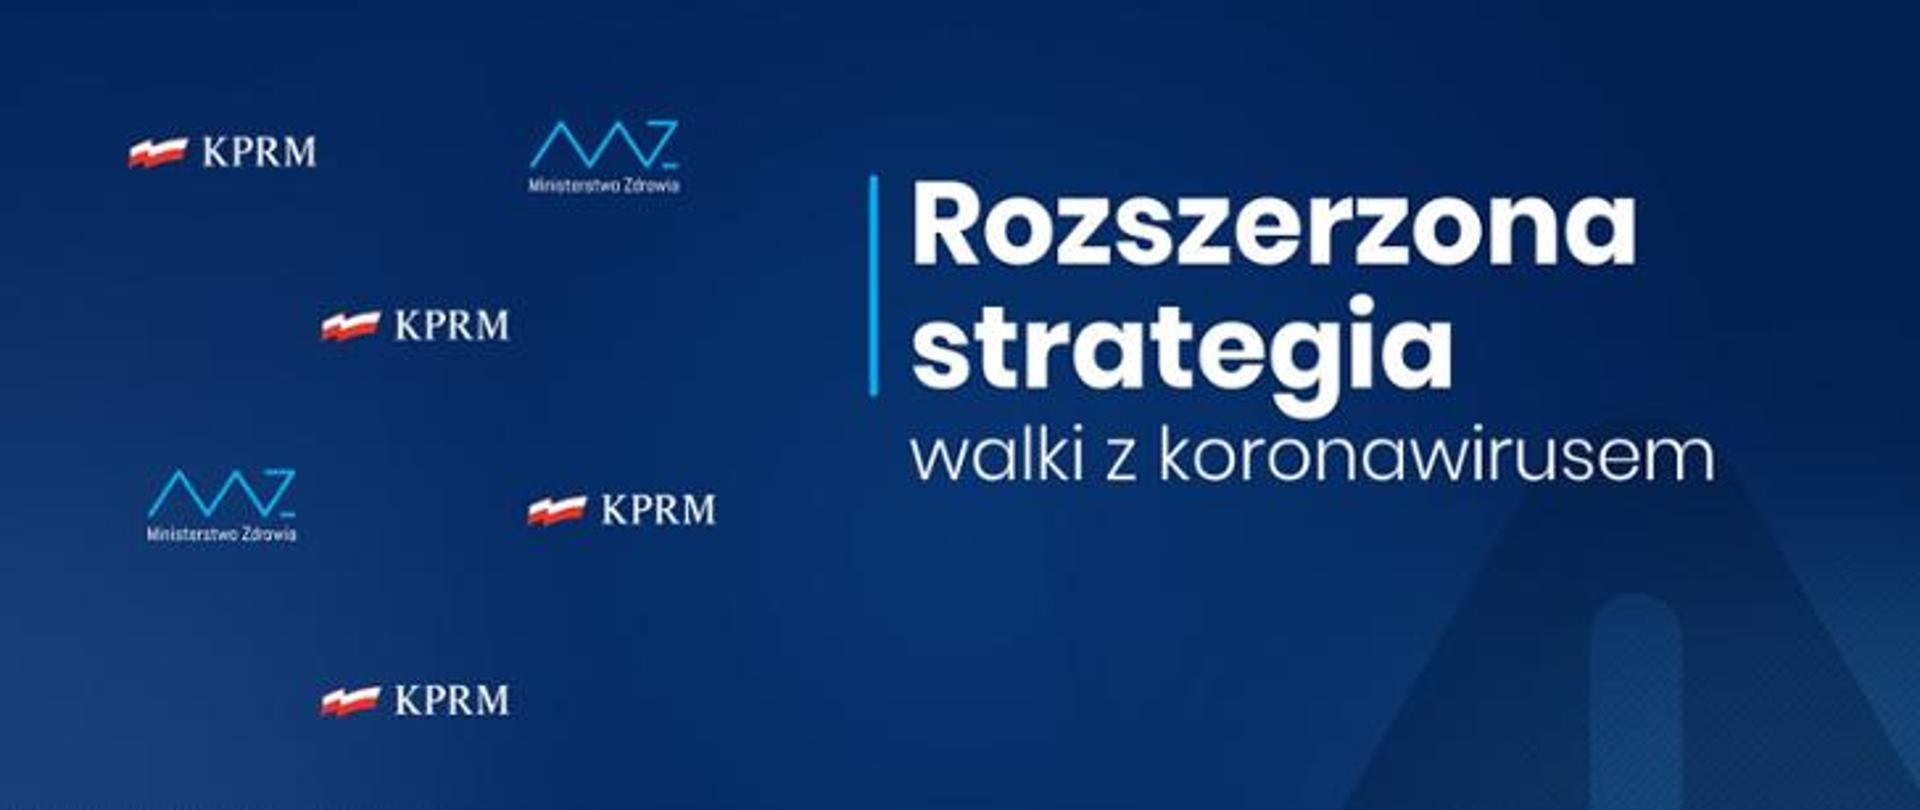 Plansza z logo KPRM-u i Ministerstwa Zdrowia oraz napisem Rozszerzona strategia walki z koronawirusem